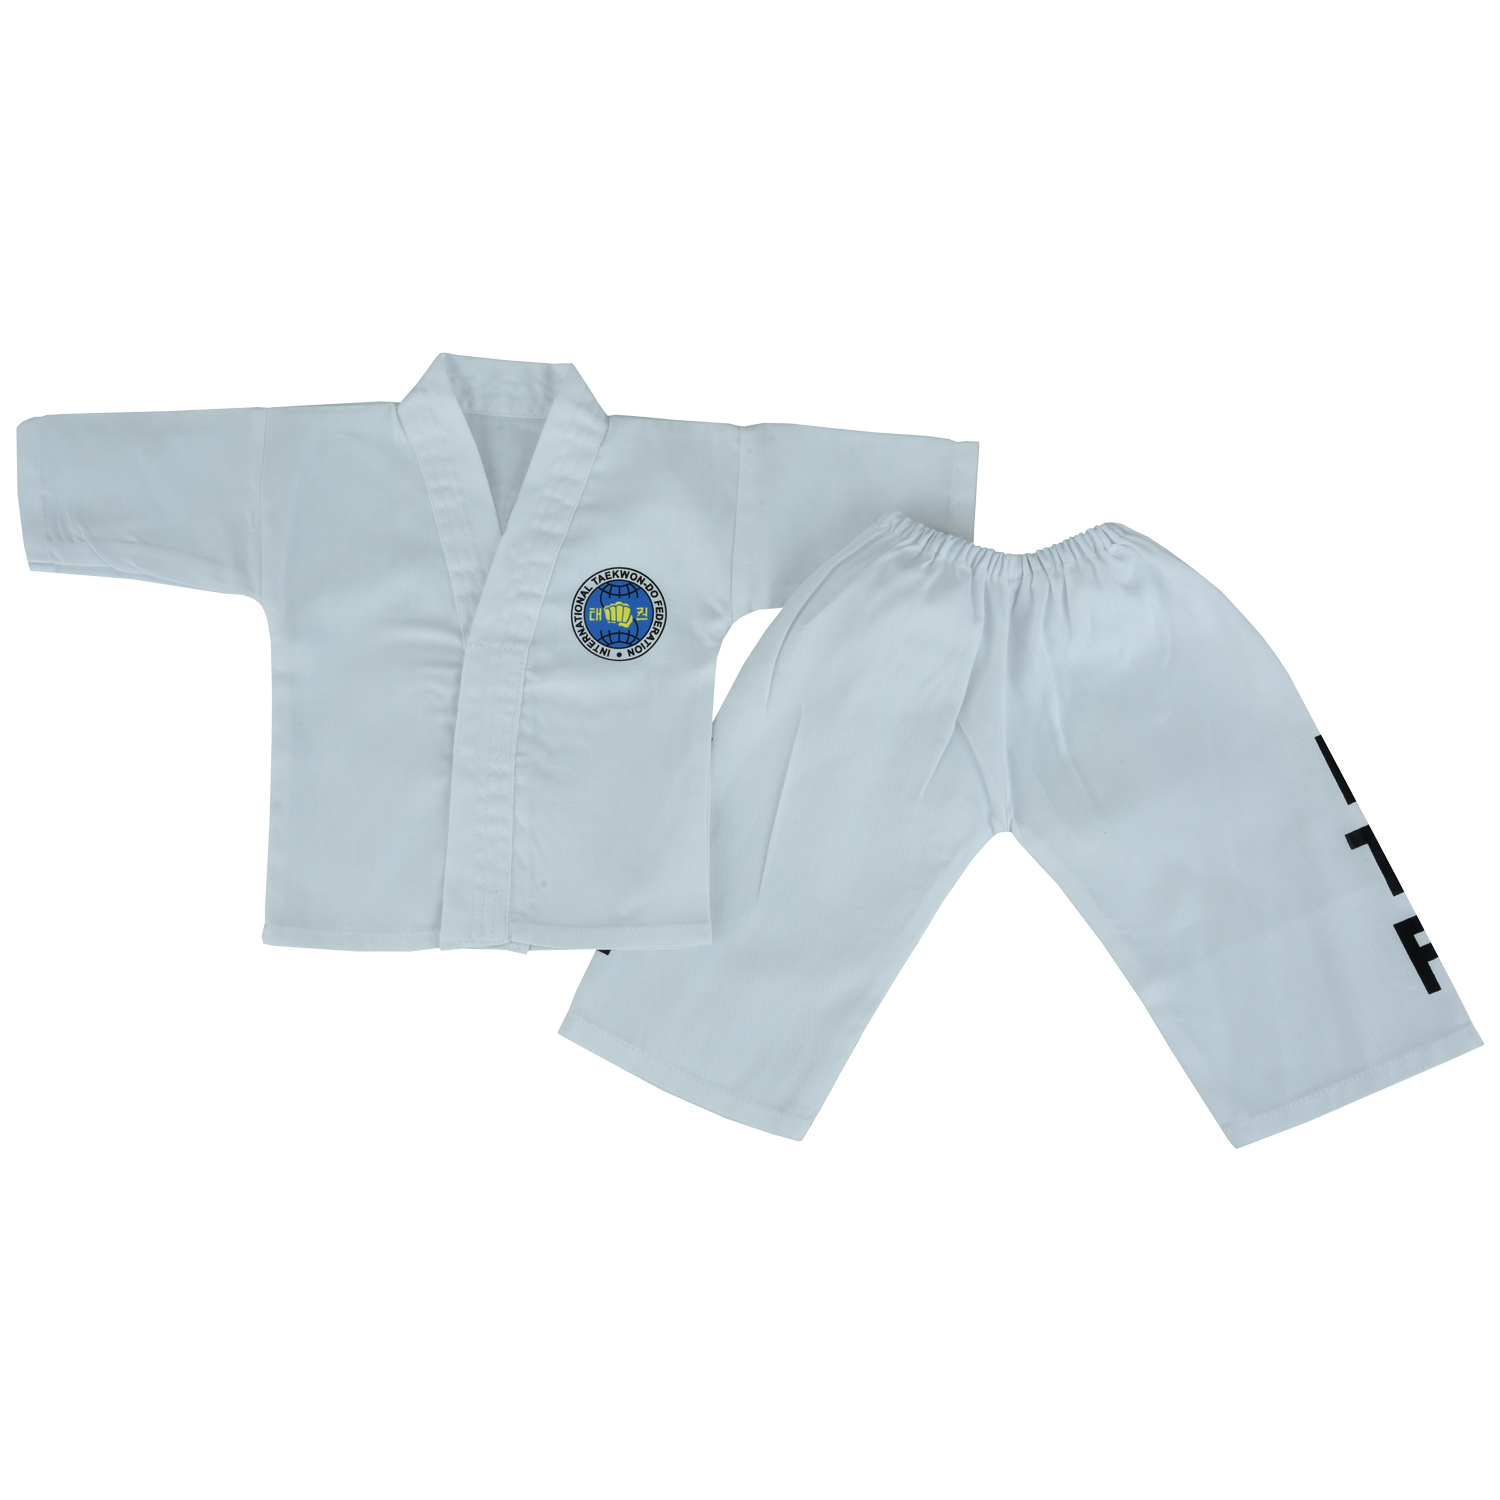 Baby ITF Taekwondo Suit - White (Infant Uniform) - Click Image to Close